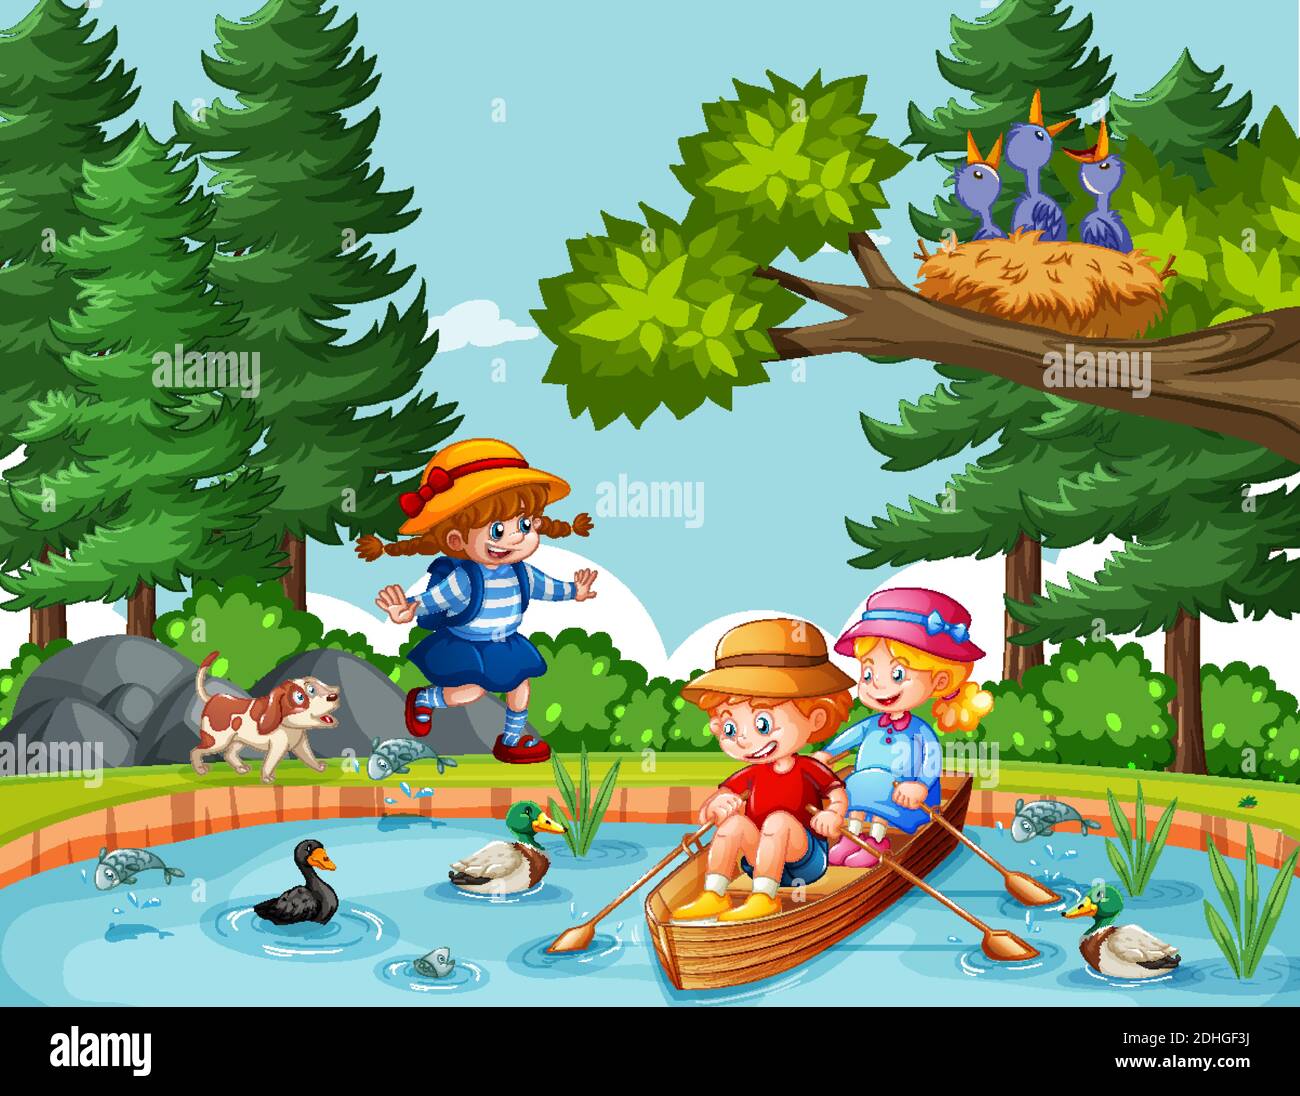 Les enfants sont à la rangée du bateau dans l'illustration de la scène de forêt fluviale Illustration de Vecteur